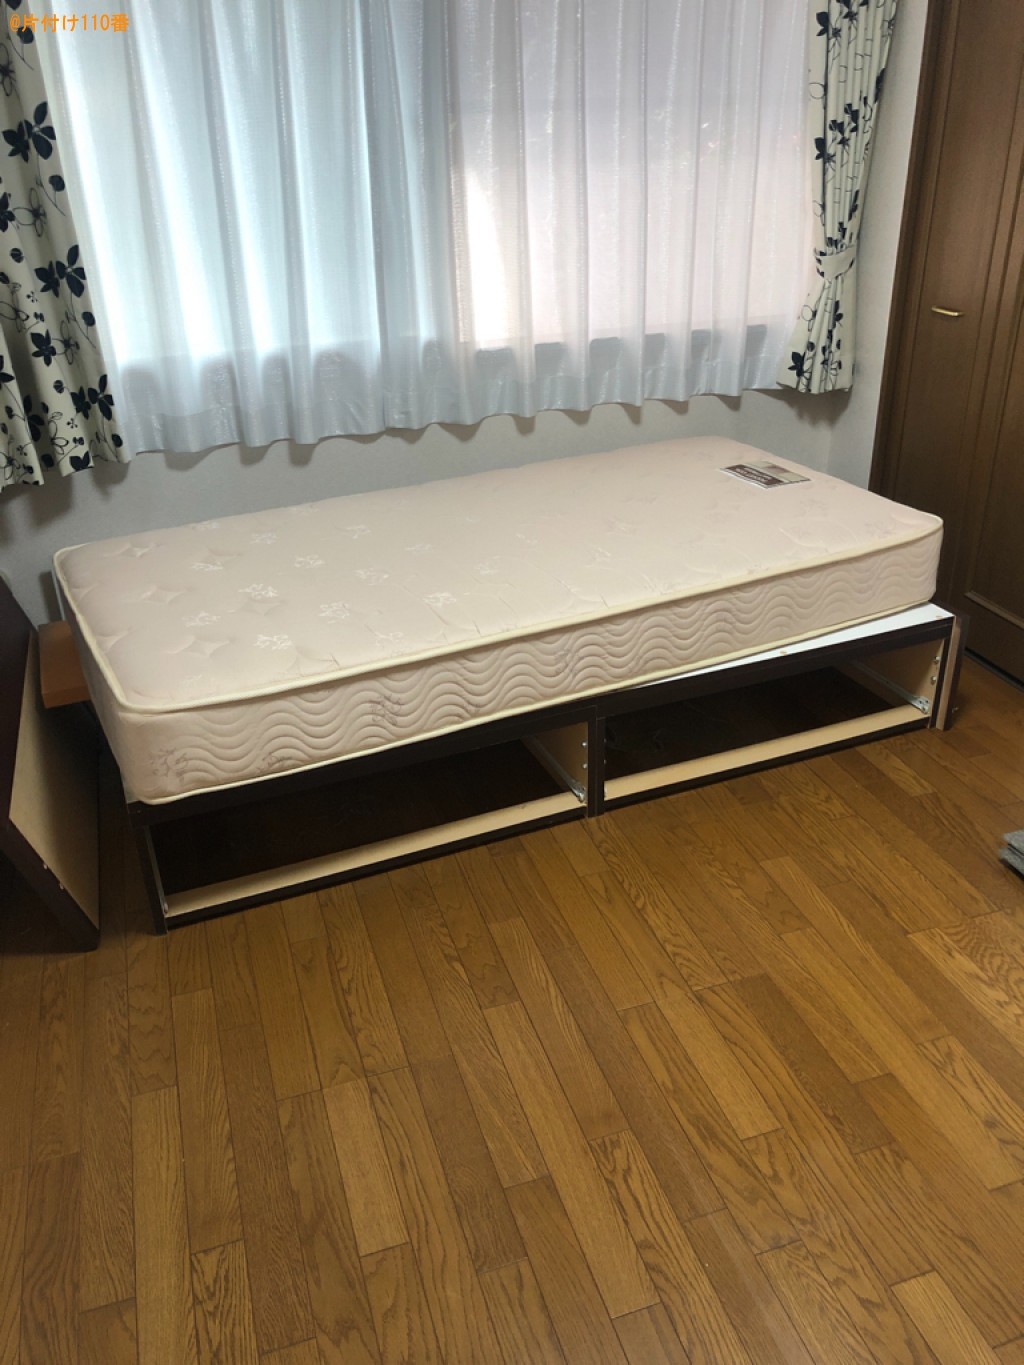 【松本市】マットレス付きシングルベッド、タンスの回収・処分ご依頼